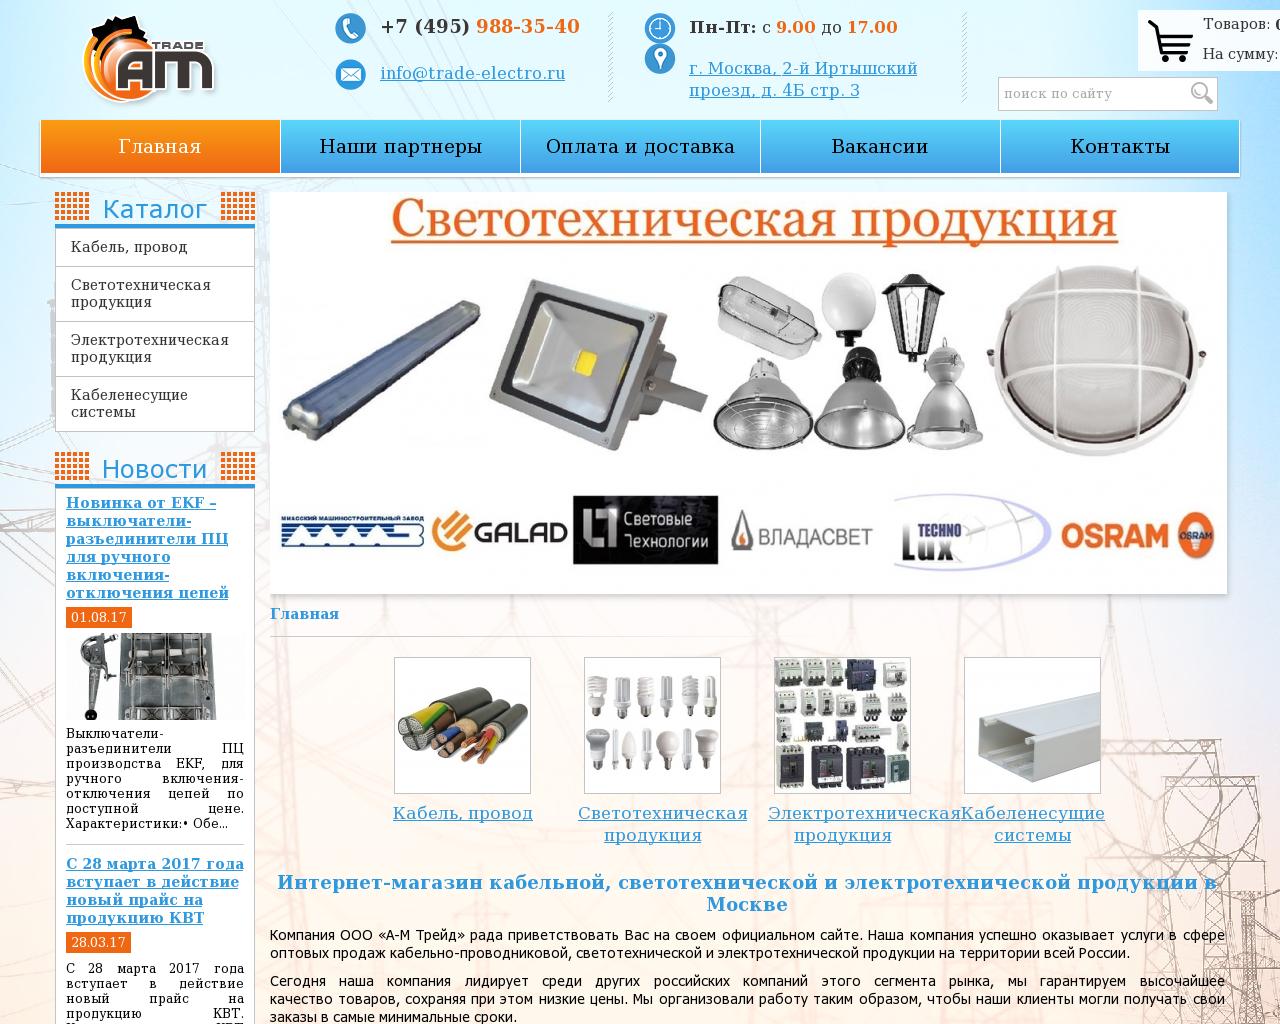 Изображение сайта trade-electro.ru в разрешении 1280x1024